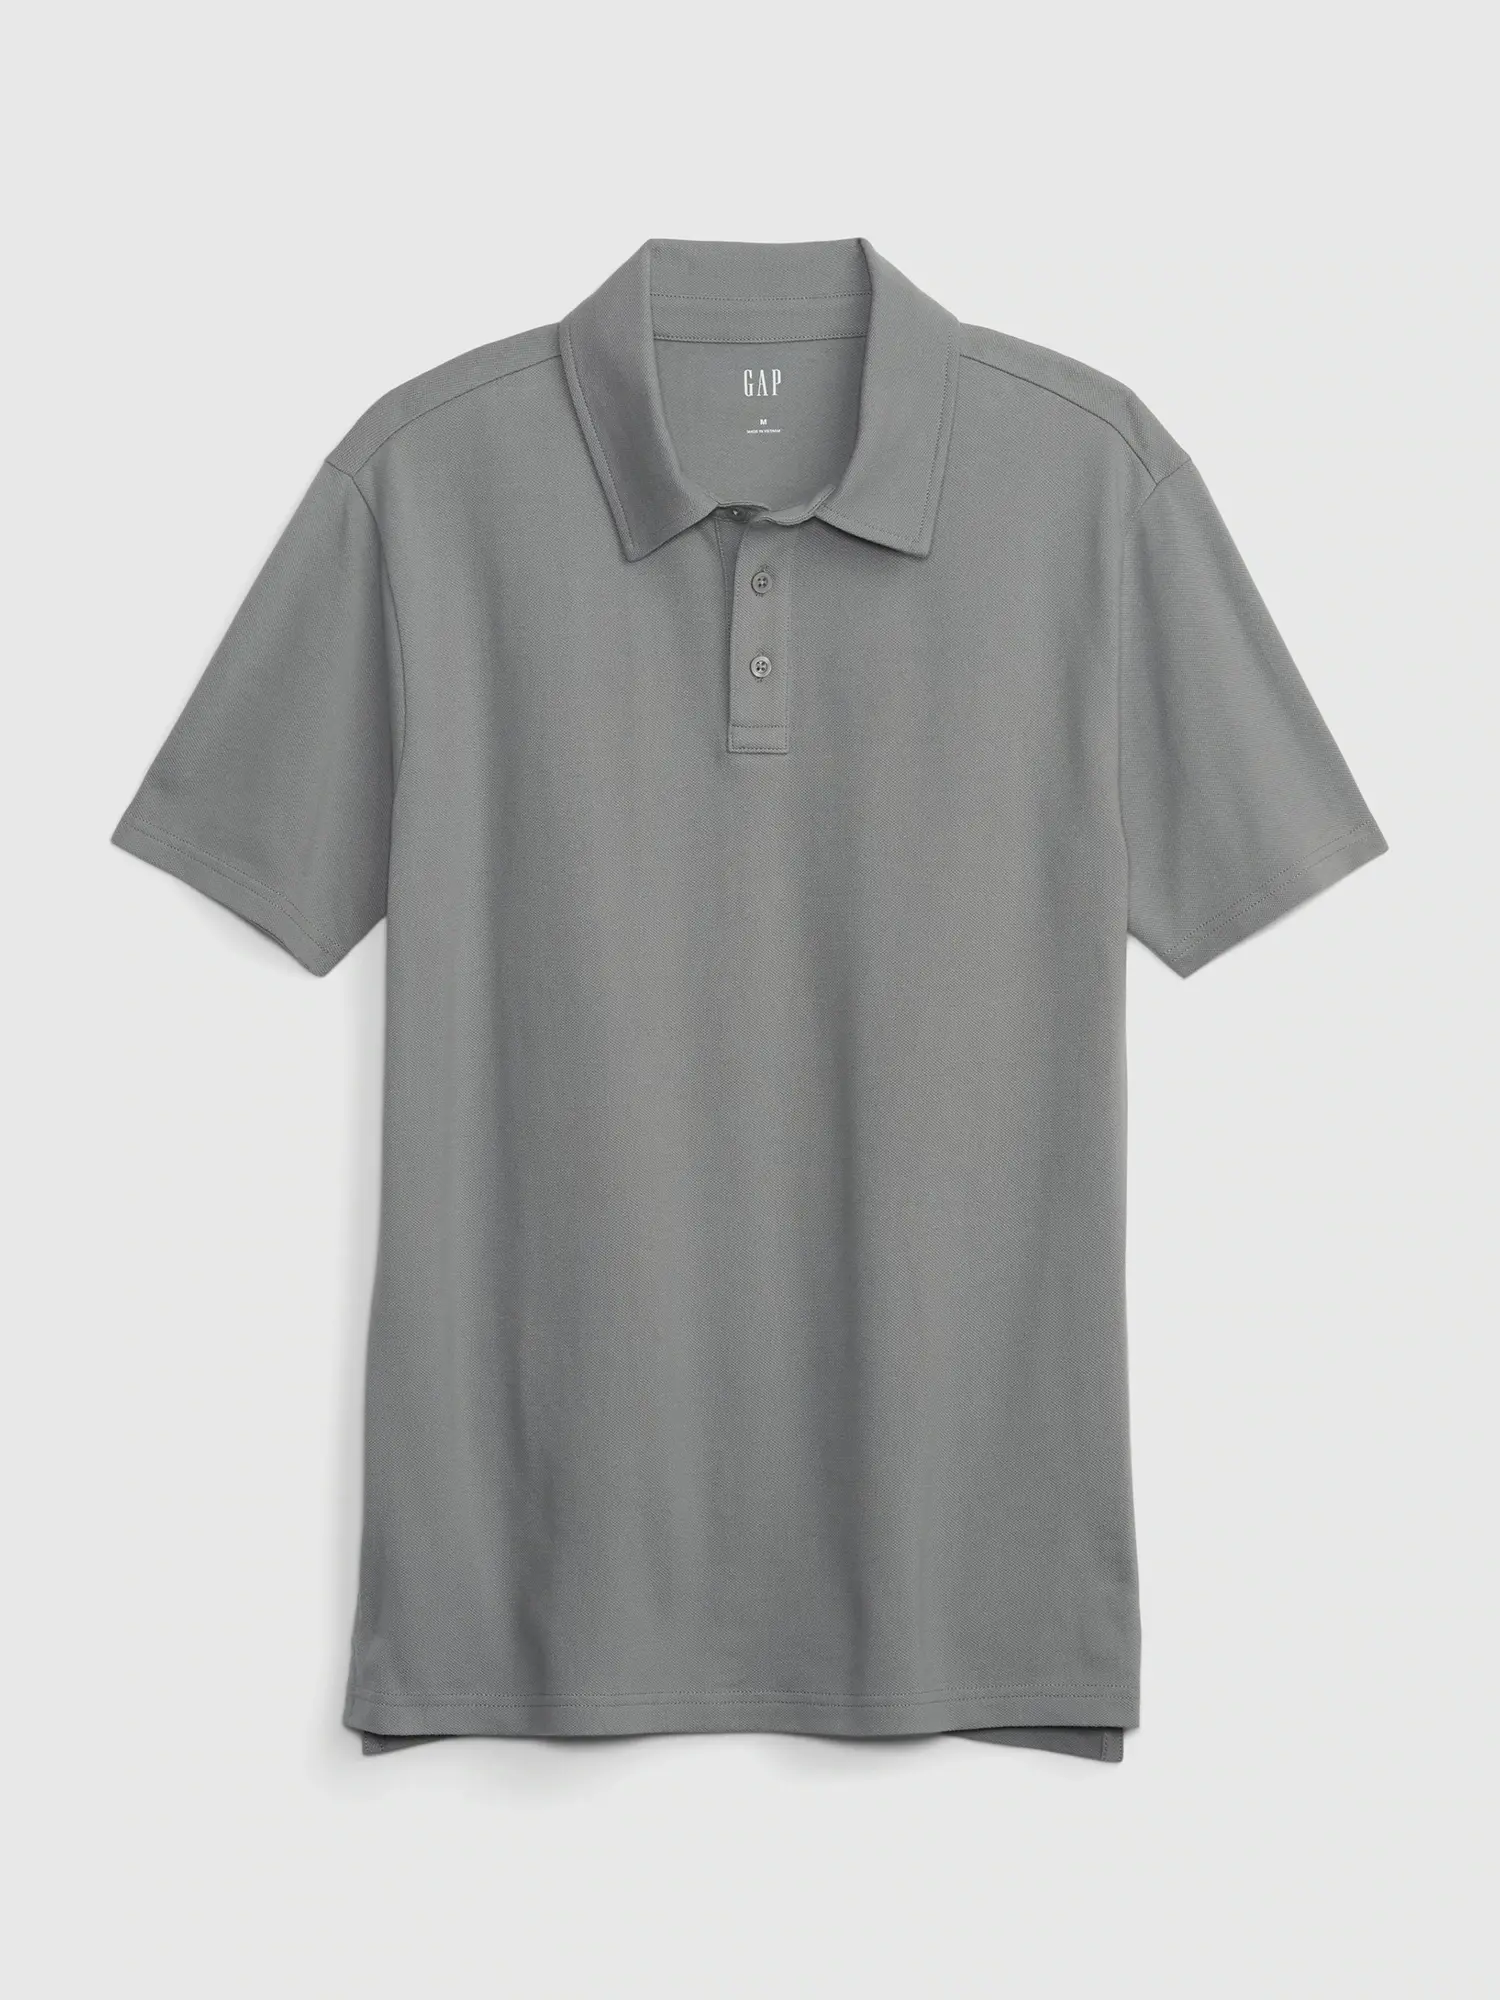 Gap Refined Pique Polo Shirt gray. 1